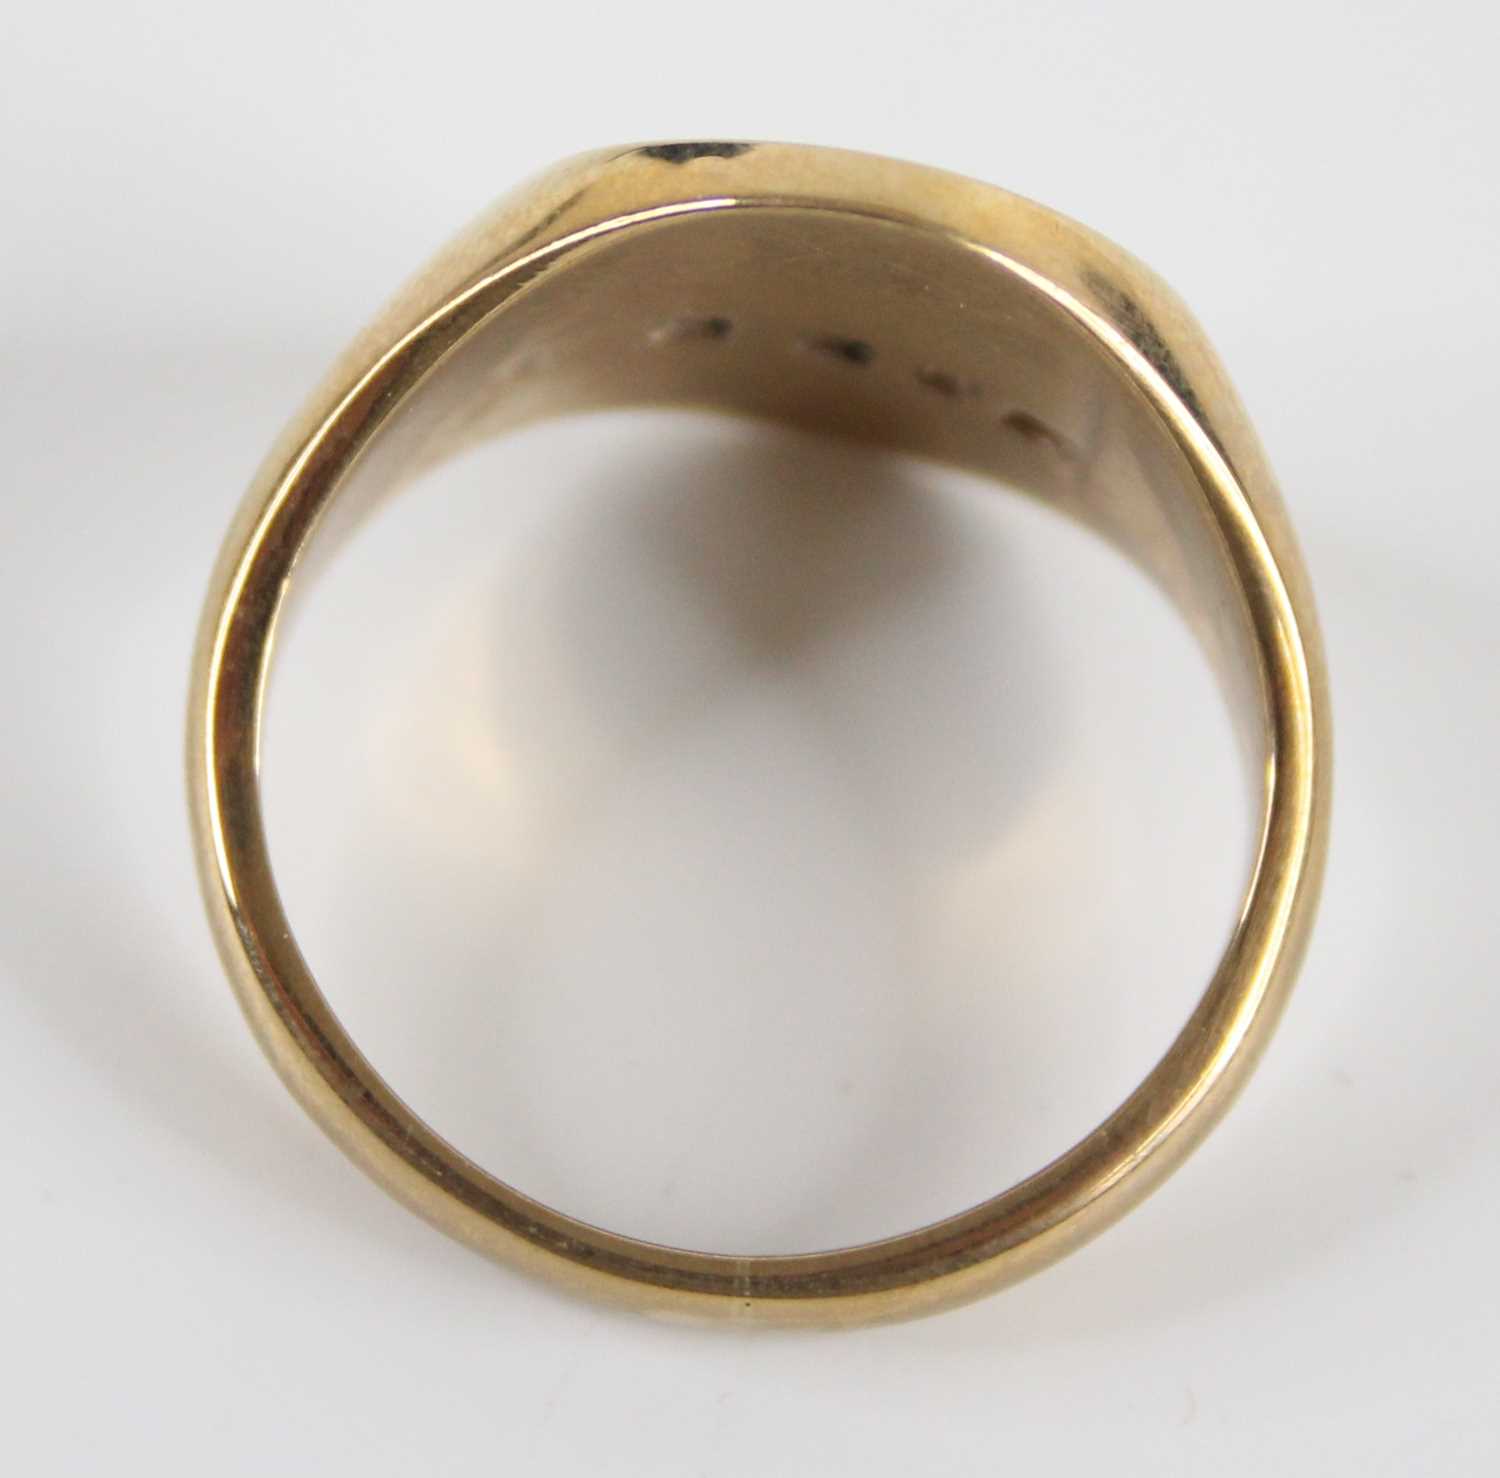 A gent's 9ct gold signet ring, having half engraved bezel, 8.5g, Birmingham 1975, sponsor EJ Ltd, - Image 5 of 5